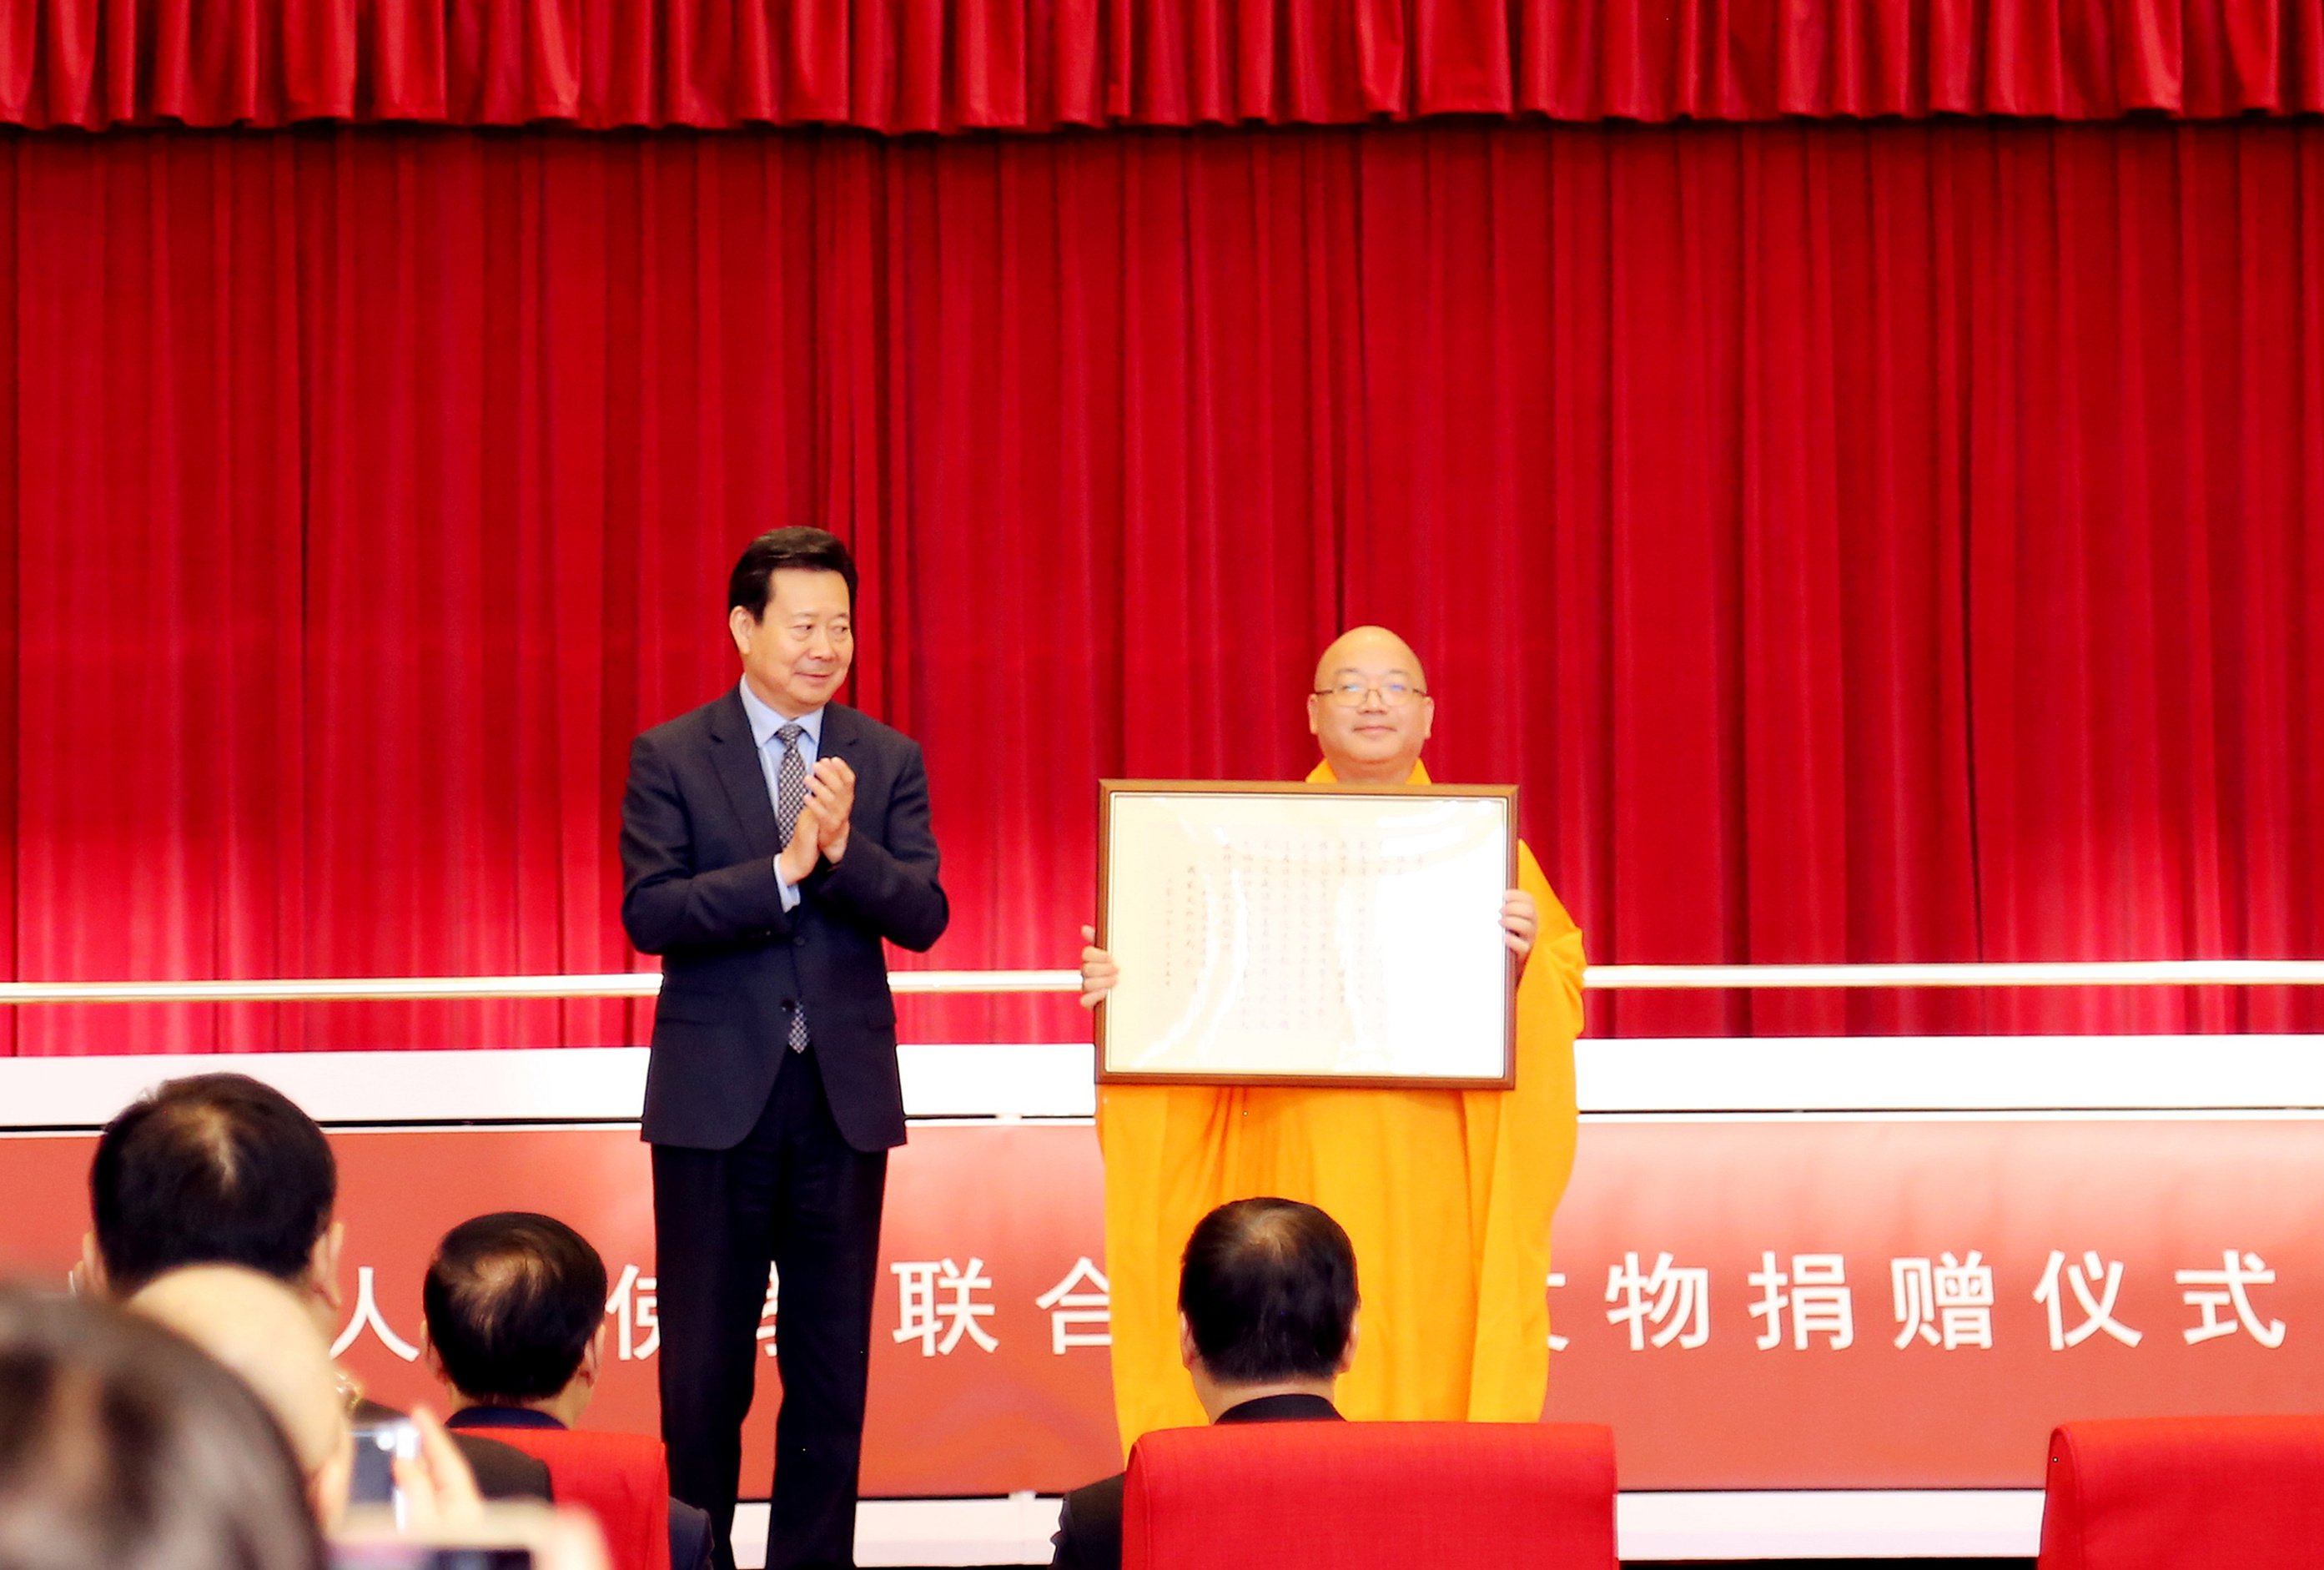 【华源助力文物回归 】 台湾中华人间佛教联合总会文物捐赠仪式在京举办